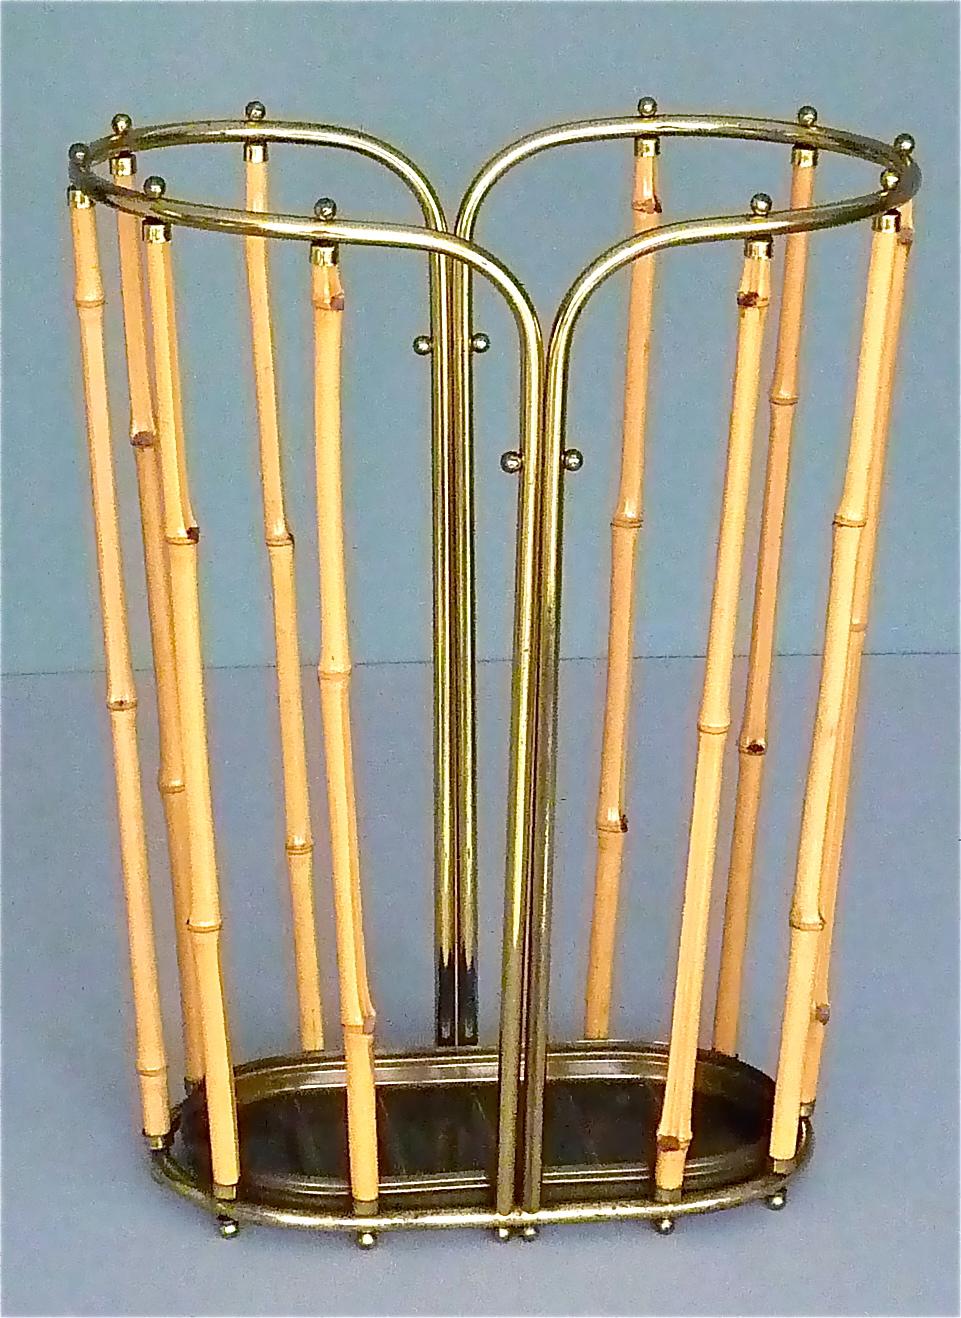 1950s Austrian Modernist Umbrella Stand Brass Bamboo, Josef Frank, Auböck Style 1